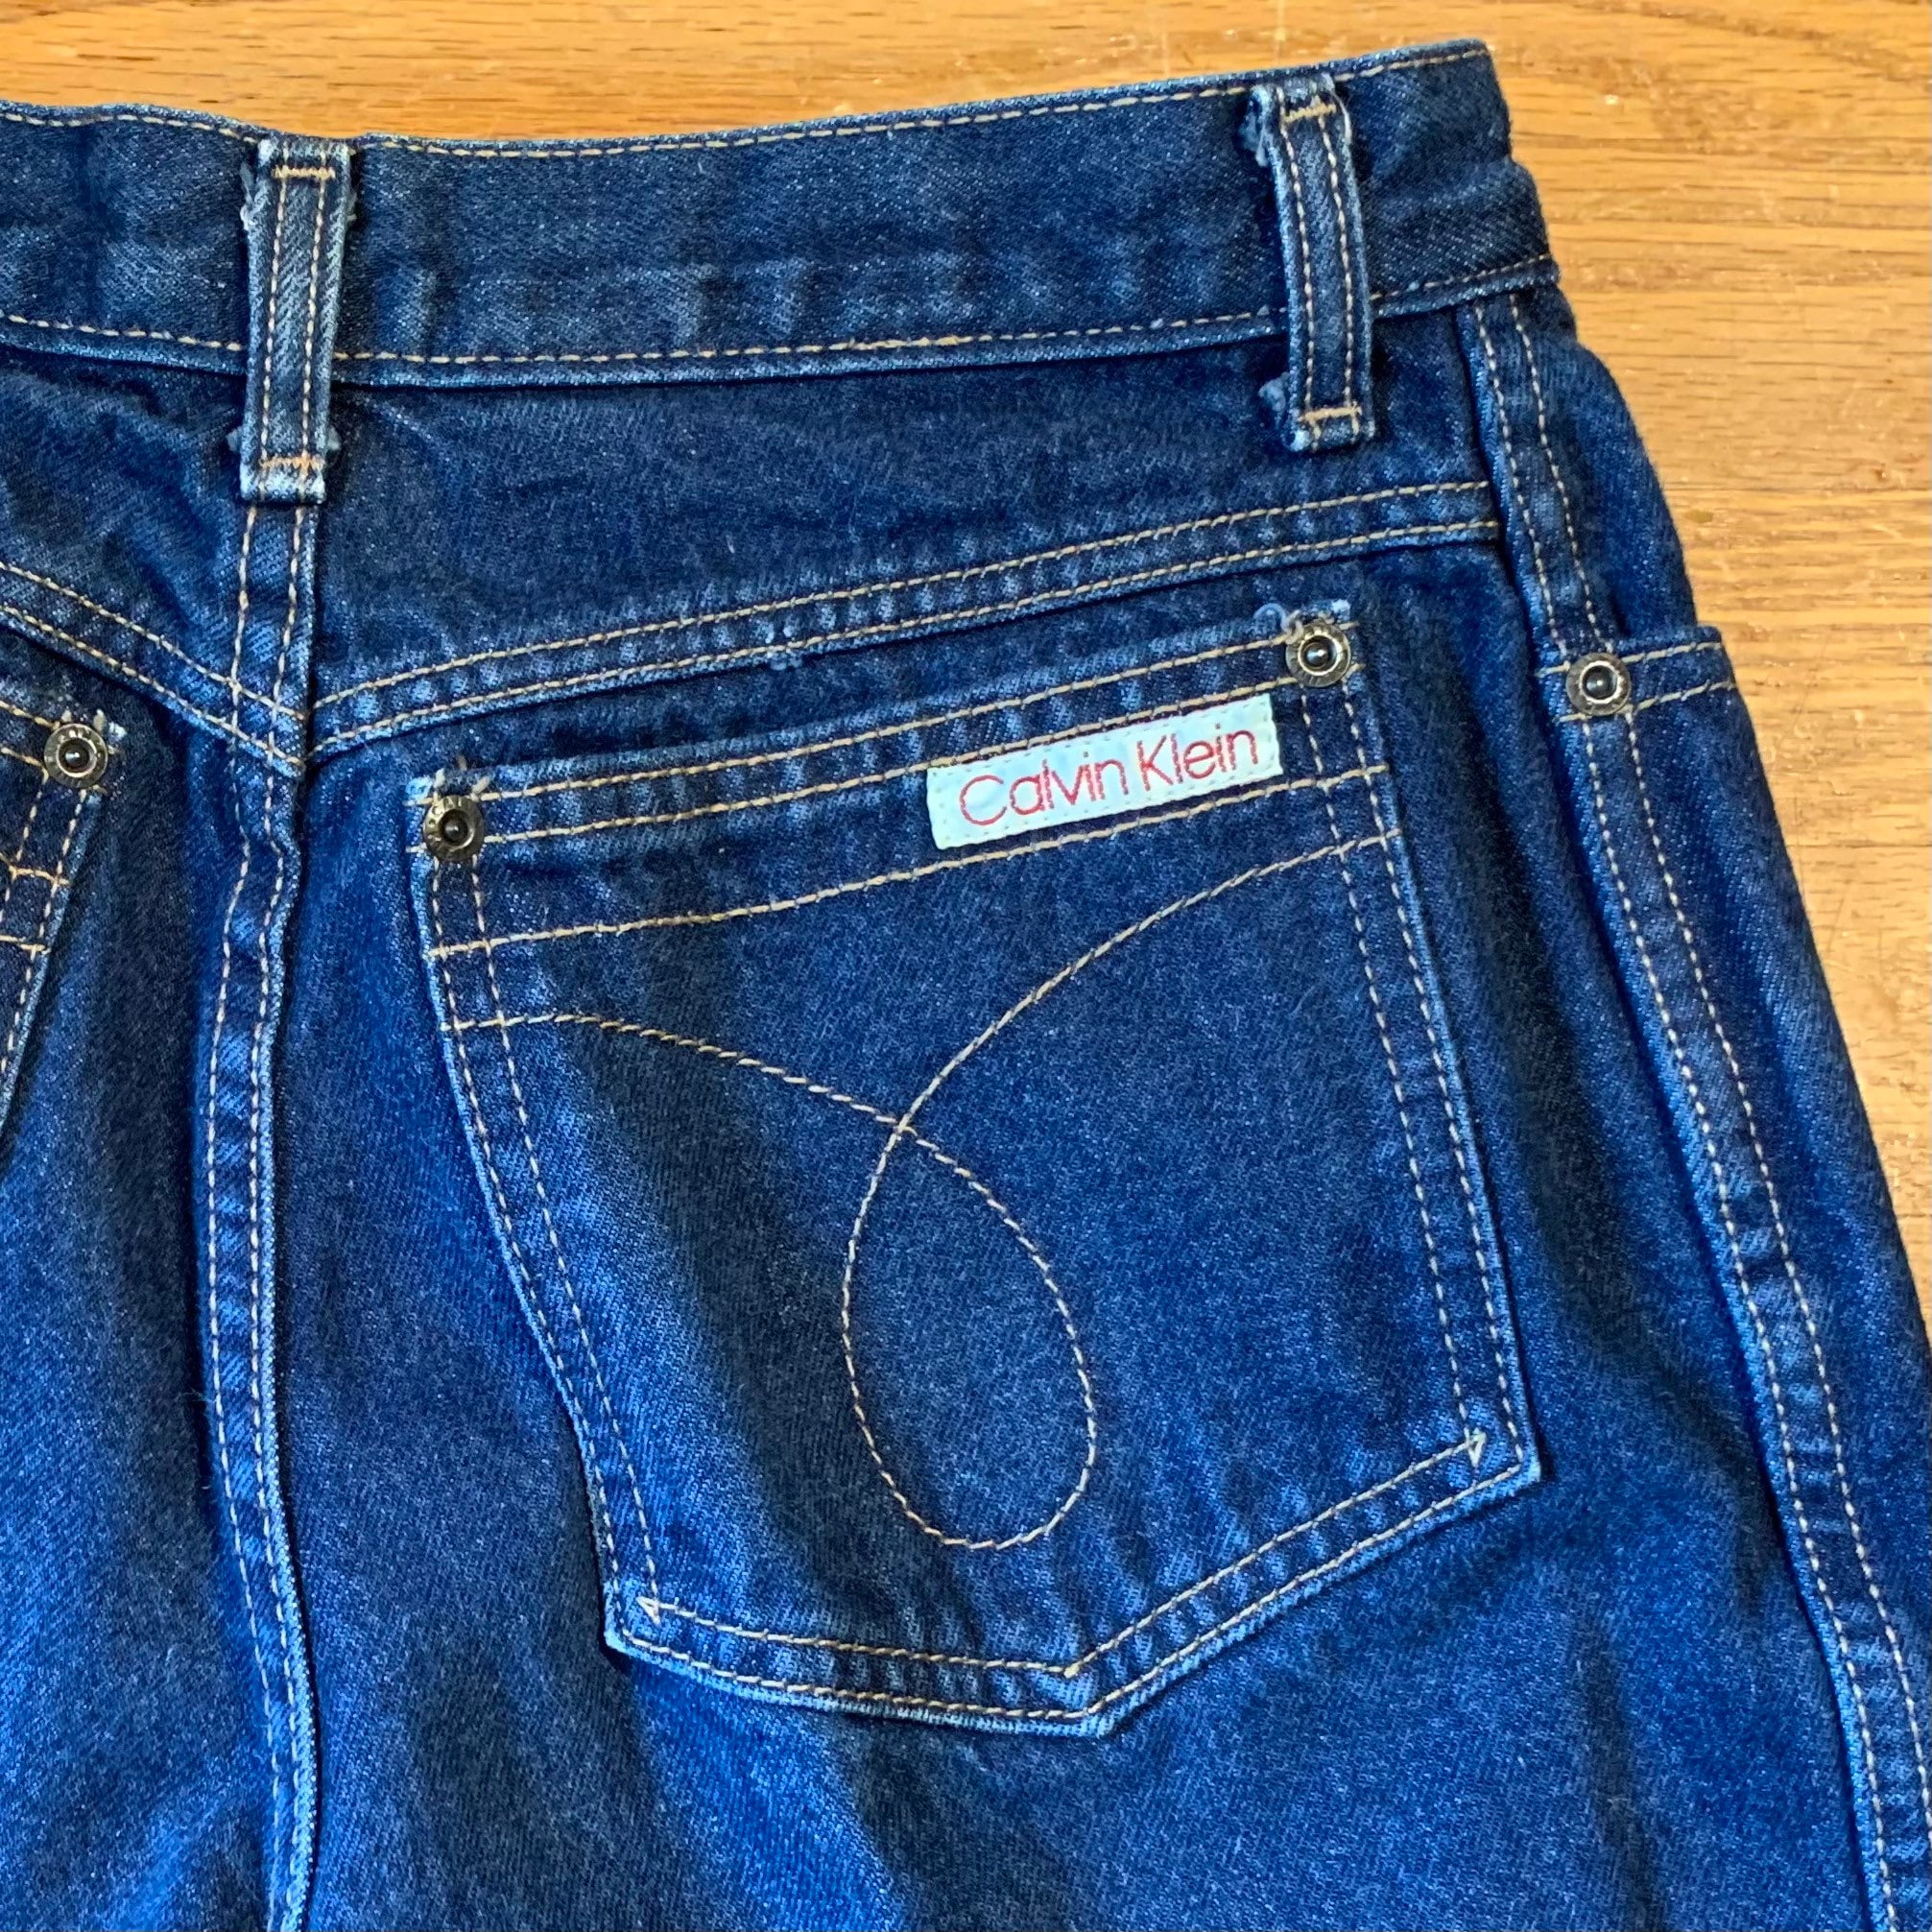 Vintage 70s Calvin Klein Jeans Dark Wash W28 - Etsy